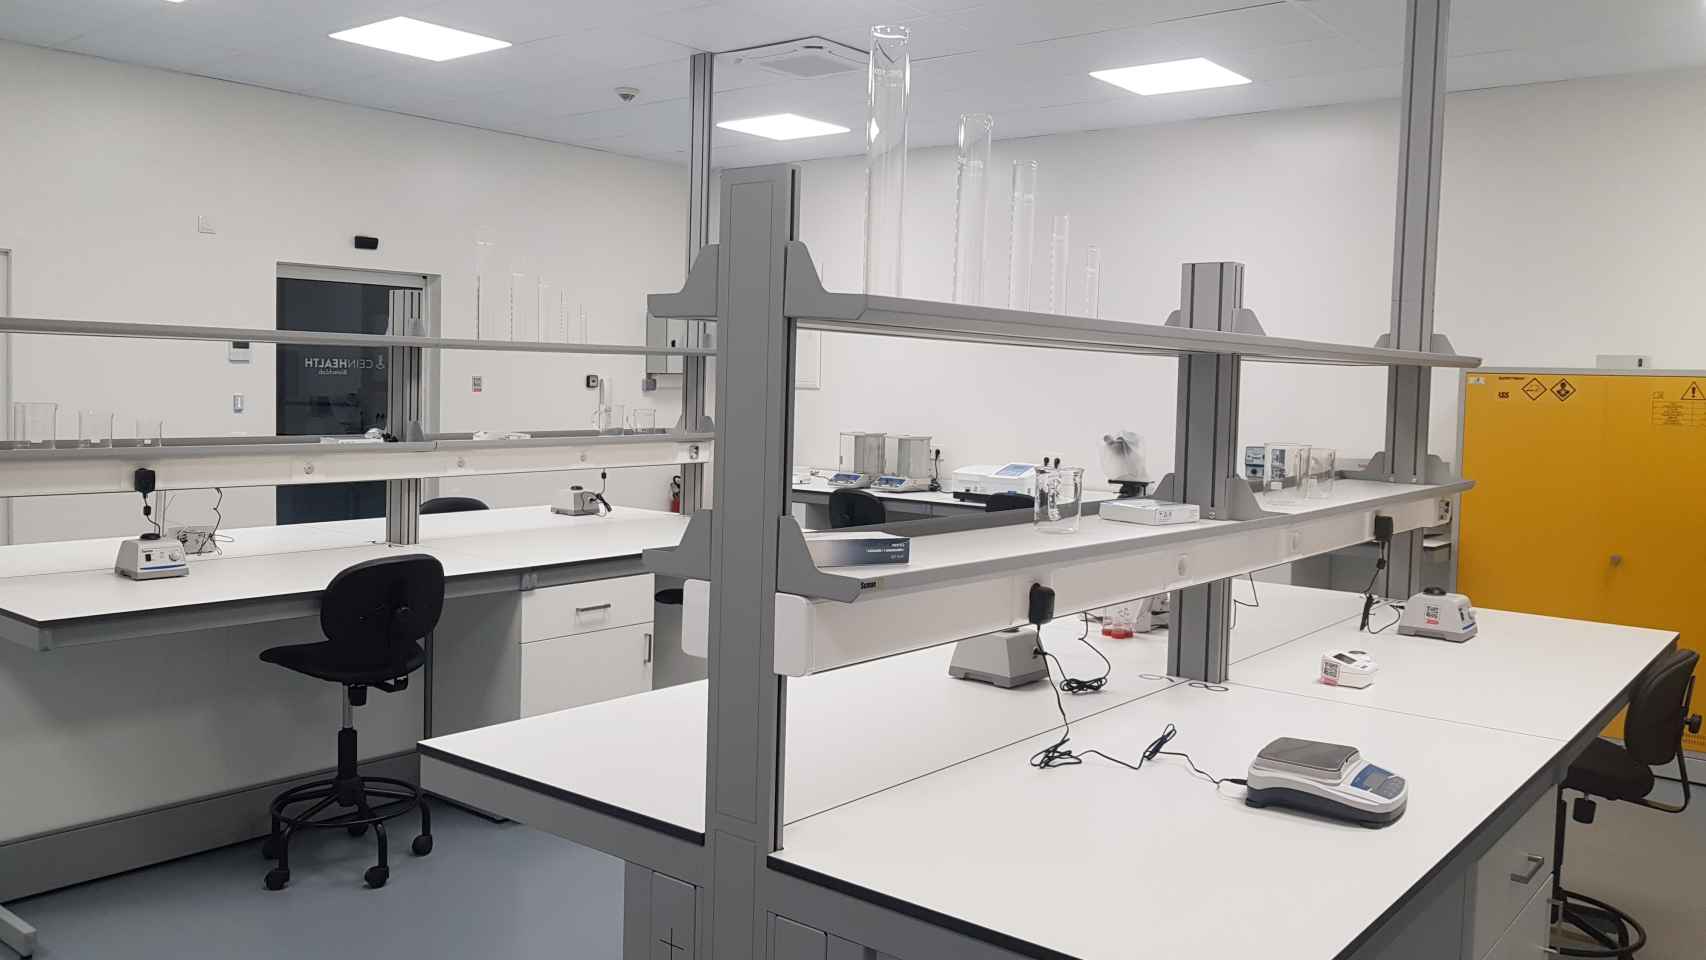 Laboratorio de MOA donde se han realizado más de 400 ensayos hasta llegar al último prototipo.